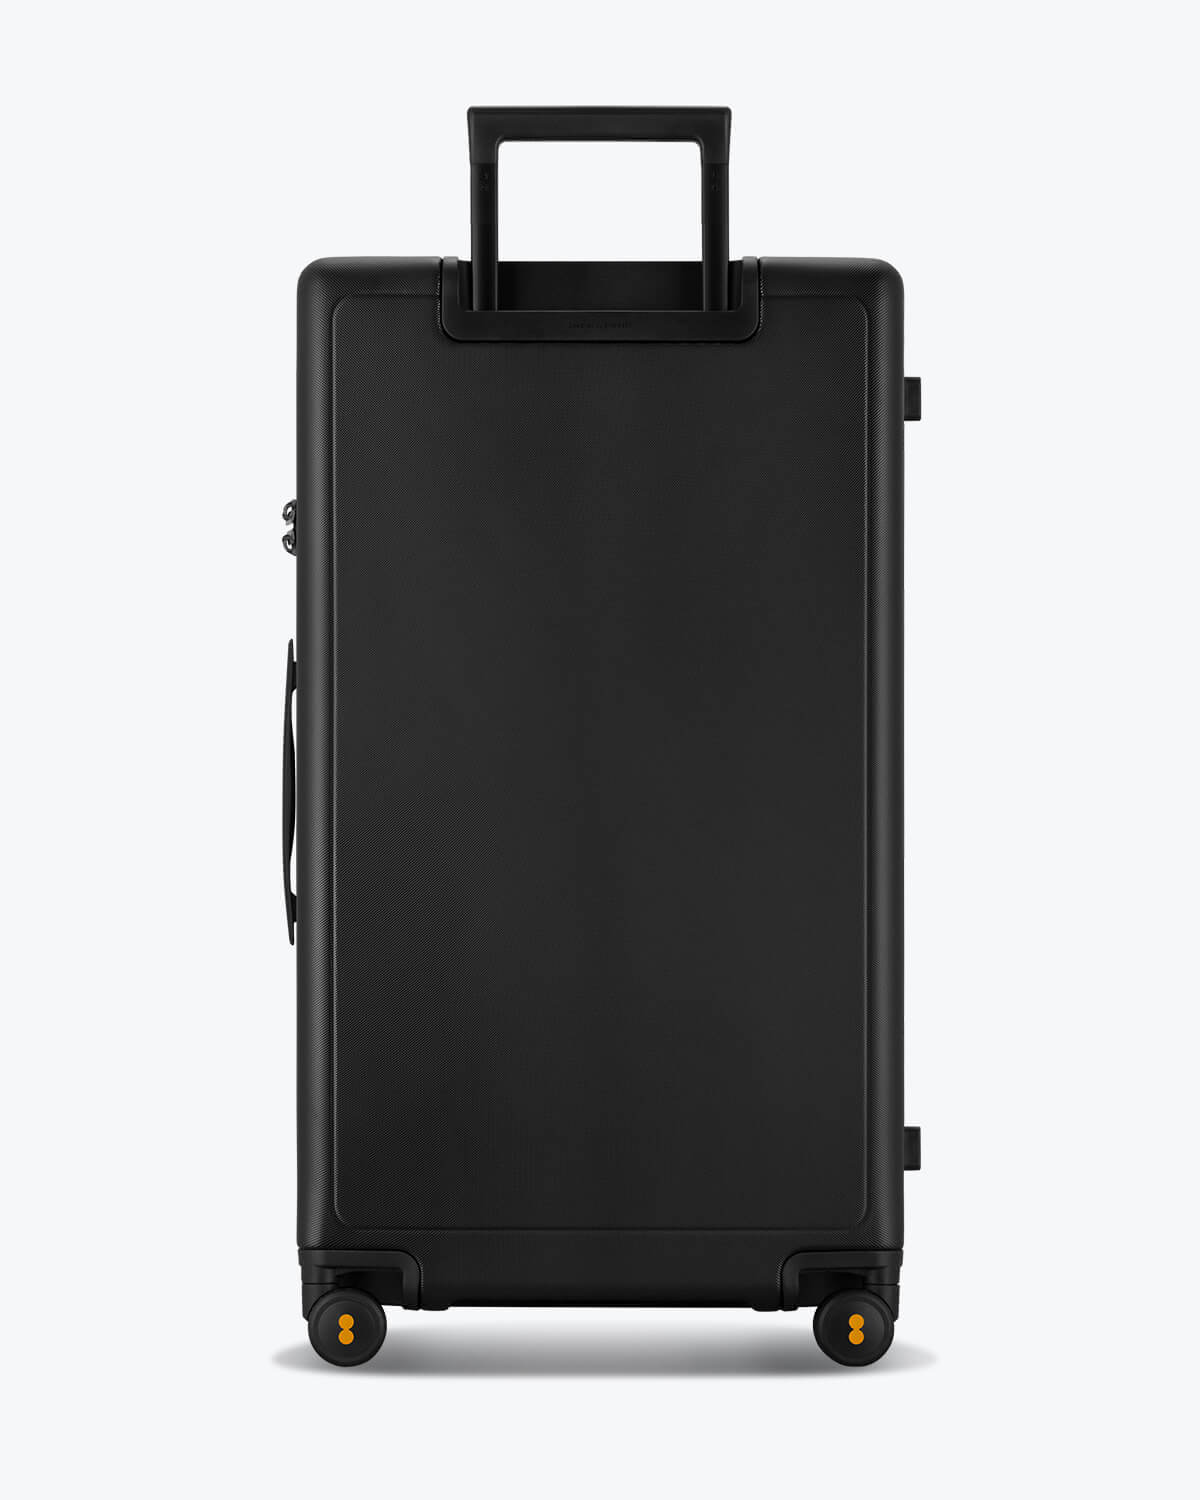 XL Trunk, Luxury Trunk Luggage